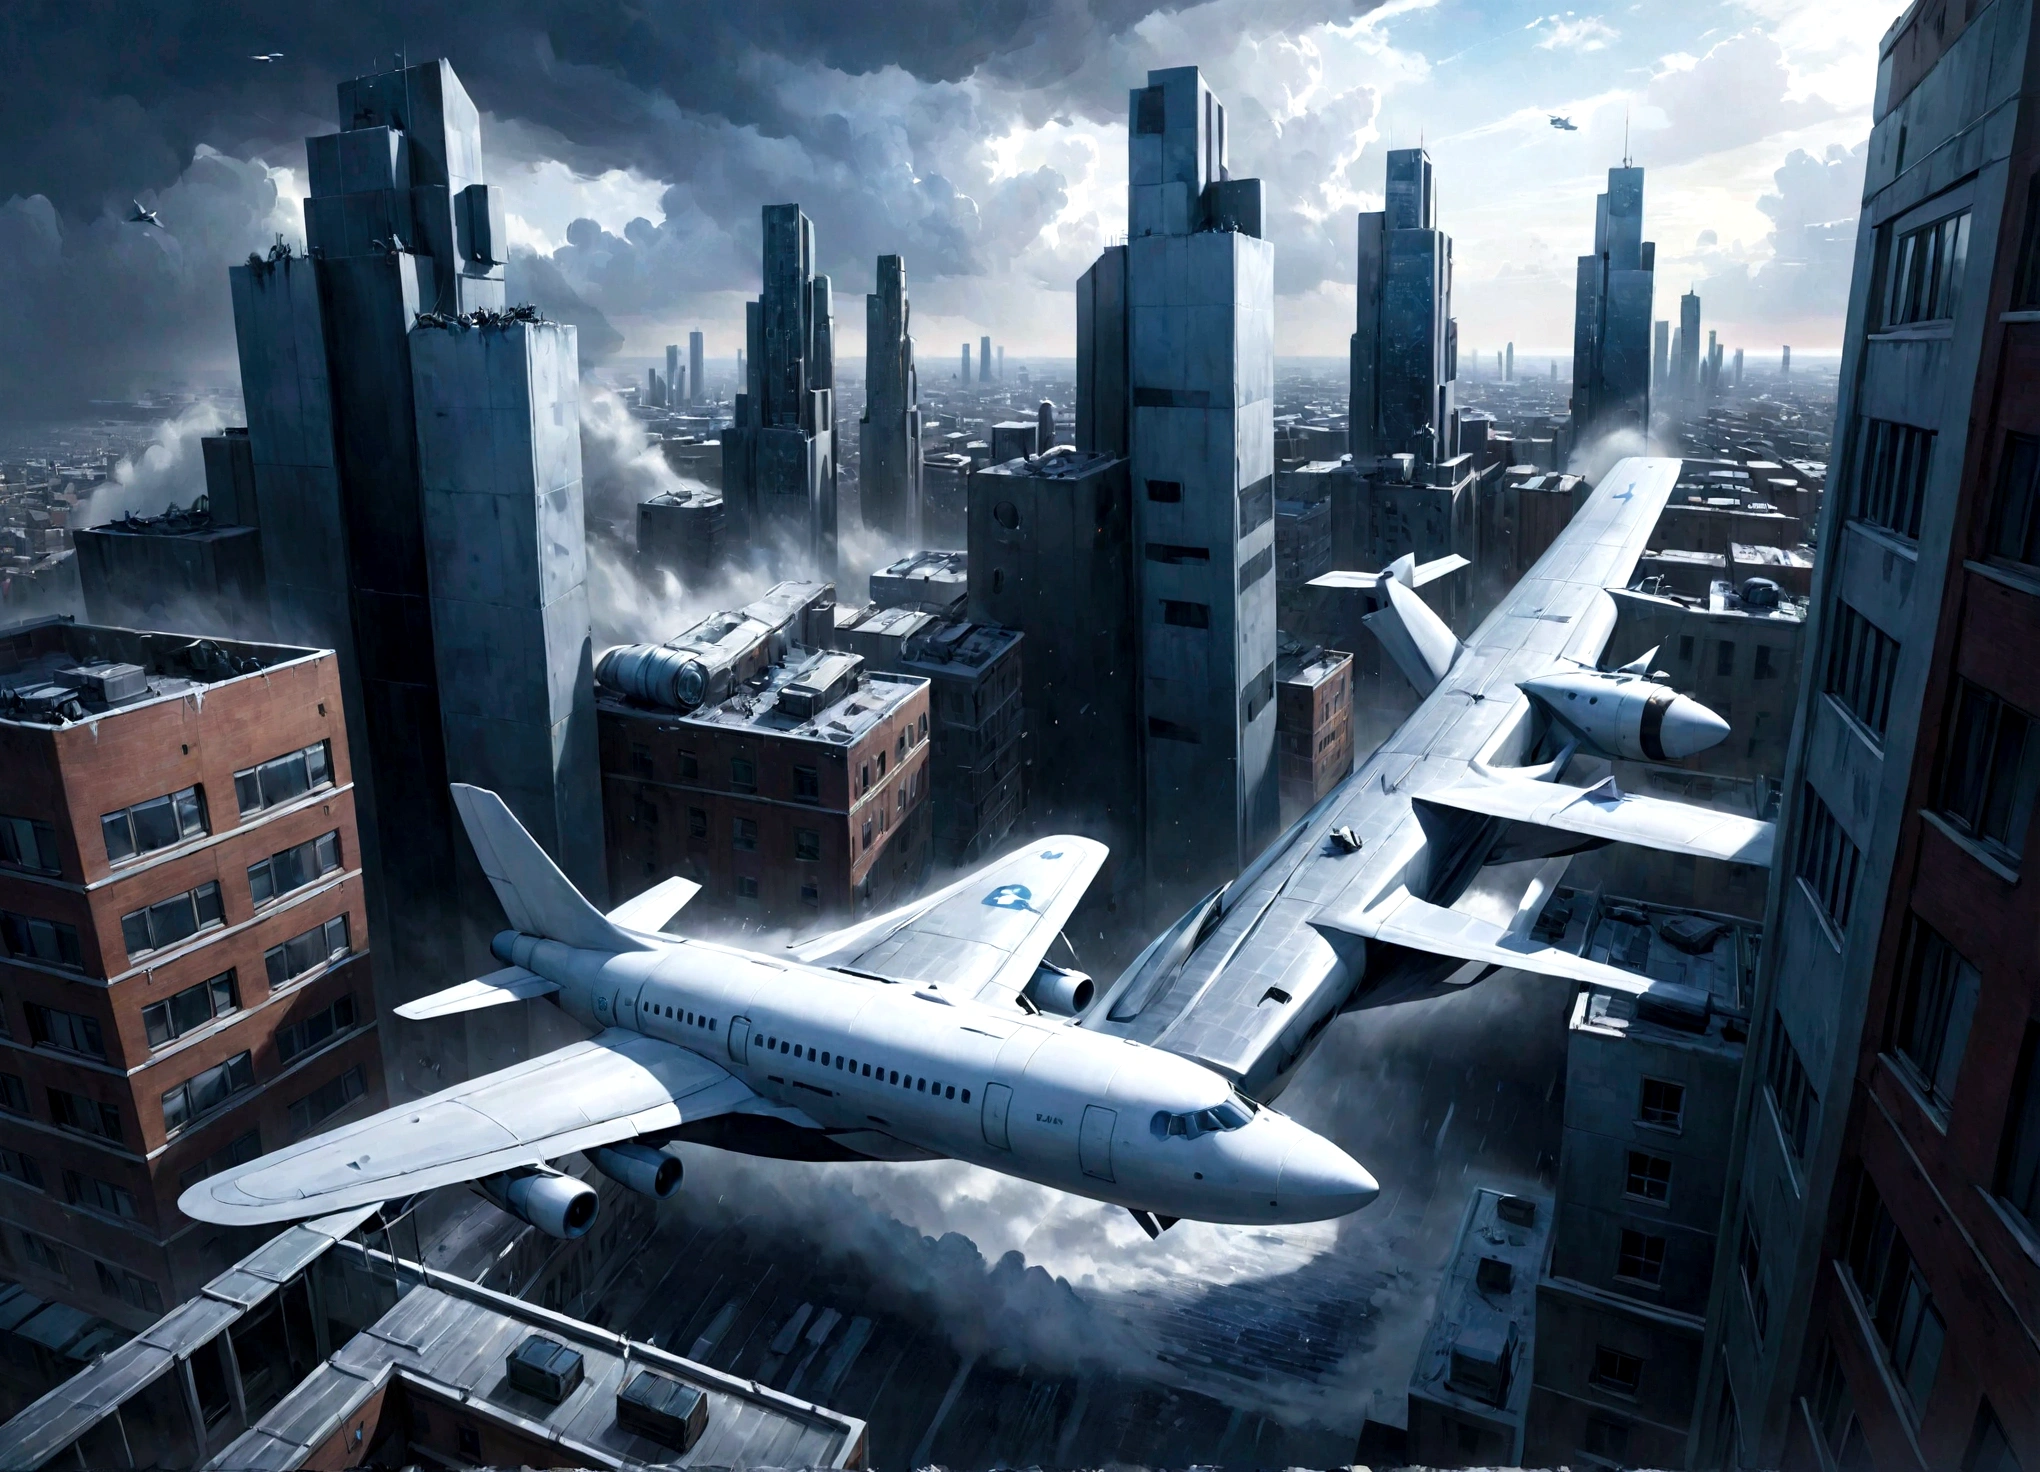 從側面看，戲劇性的電影場景, 靈感來自 Rick Owens 美術風格. 它有一個大飛機, 當它在惡劣的天氣中掙扎時，它會被顯著地展示出來, 瞄準天空. 飛機下方, 從上面看, 是一片密集的城市景觀，以一直延伸到地平線的公寓大樓為主. 整個影像呈現為藍色和白色的色調, 呼應虛構的 Самолет 公司的企業色彩. 這個畫面融合了超現實主義和超現實主義, 夏卡爾畫作的夢幻特質, 創造出視覺上引人注目且獨特的城市景觀. -